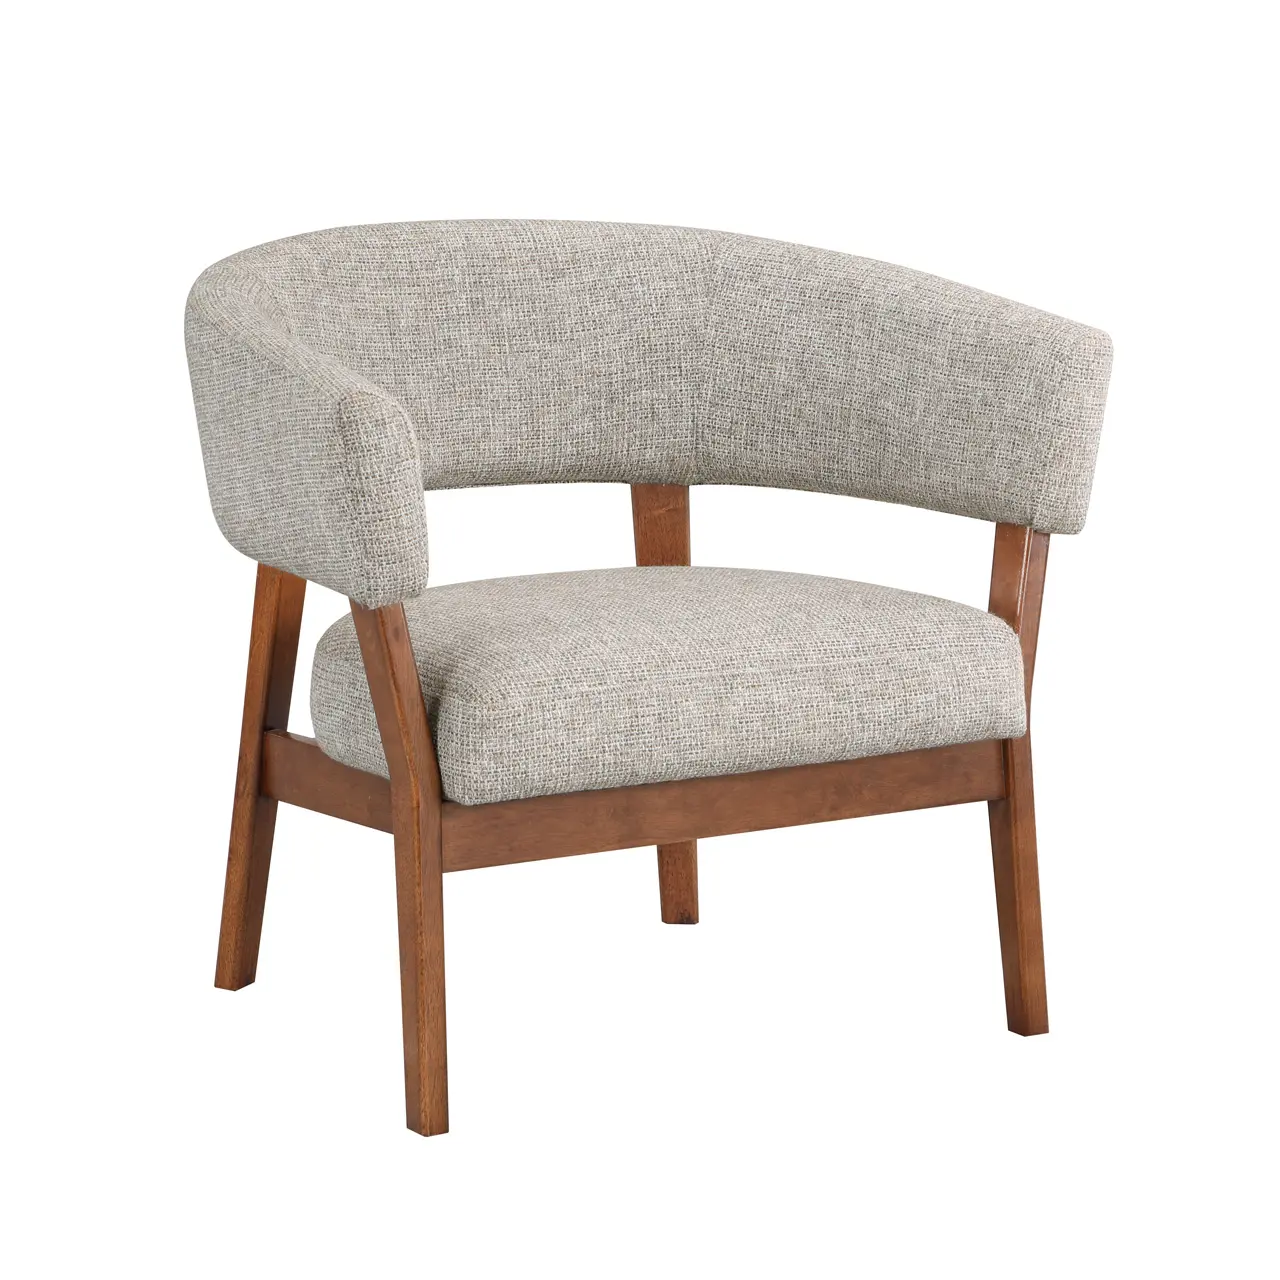 Sillón de estilo europeo para muebles del hogar, silla de ocio de estilo moderno y Simple, color blanco madera, Kd